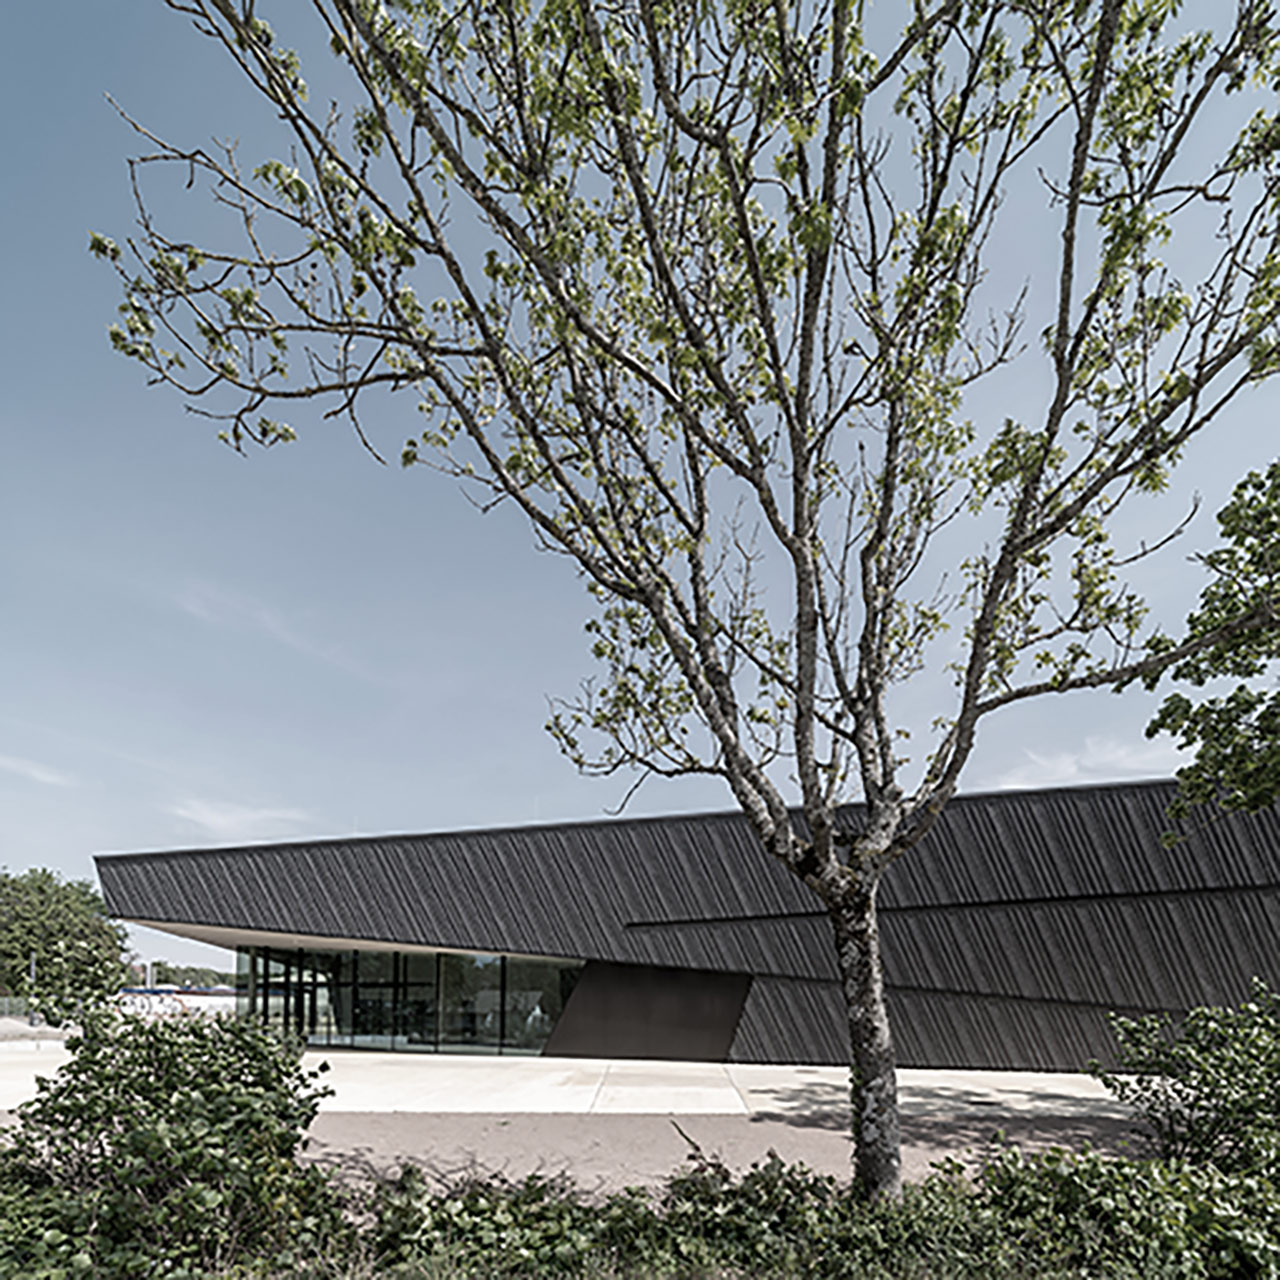 Neubau Veranstaltungshalle Kuppenheim auf der Shortlist Heinze ArchitektenAWARD 21